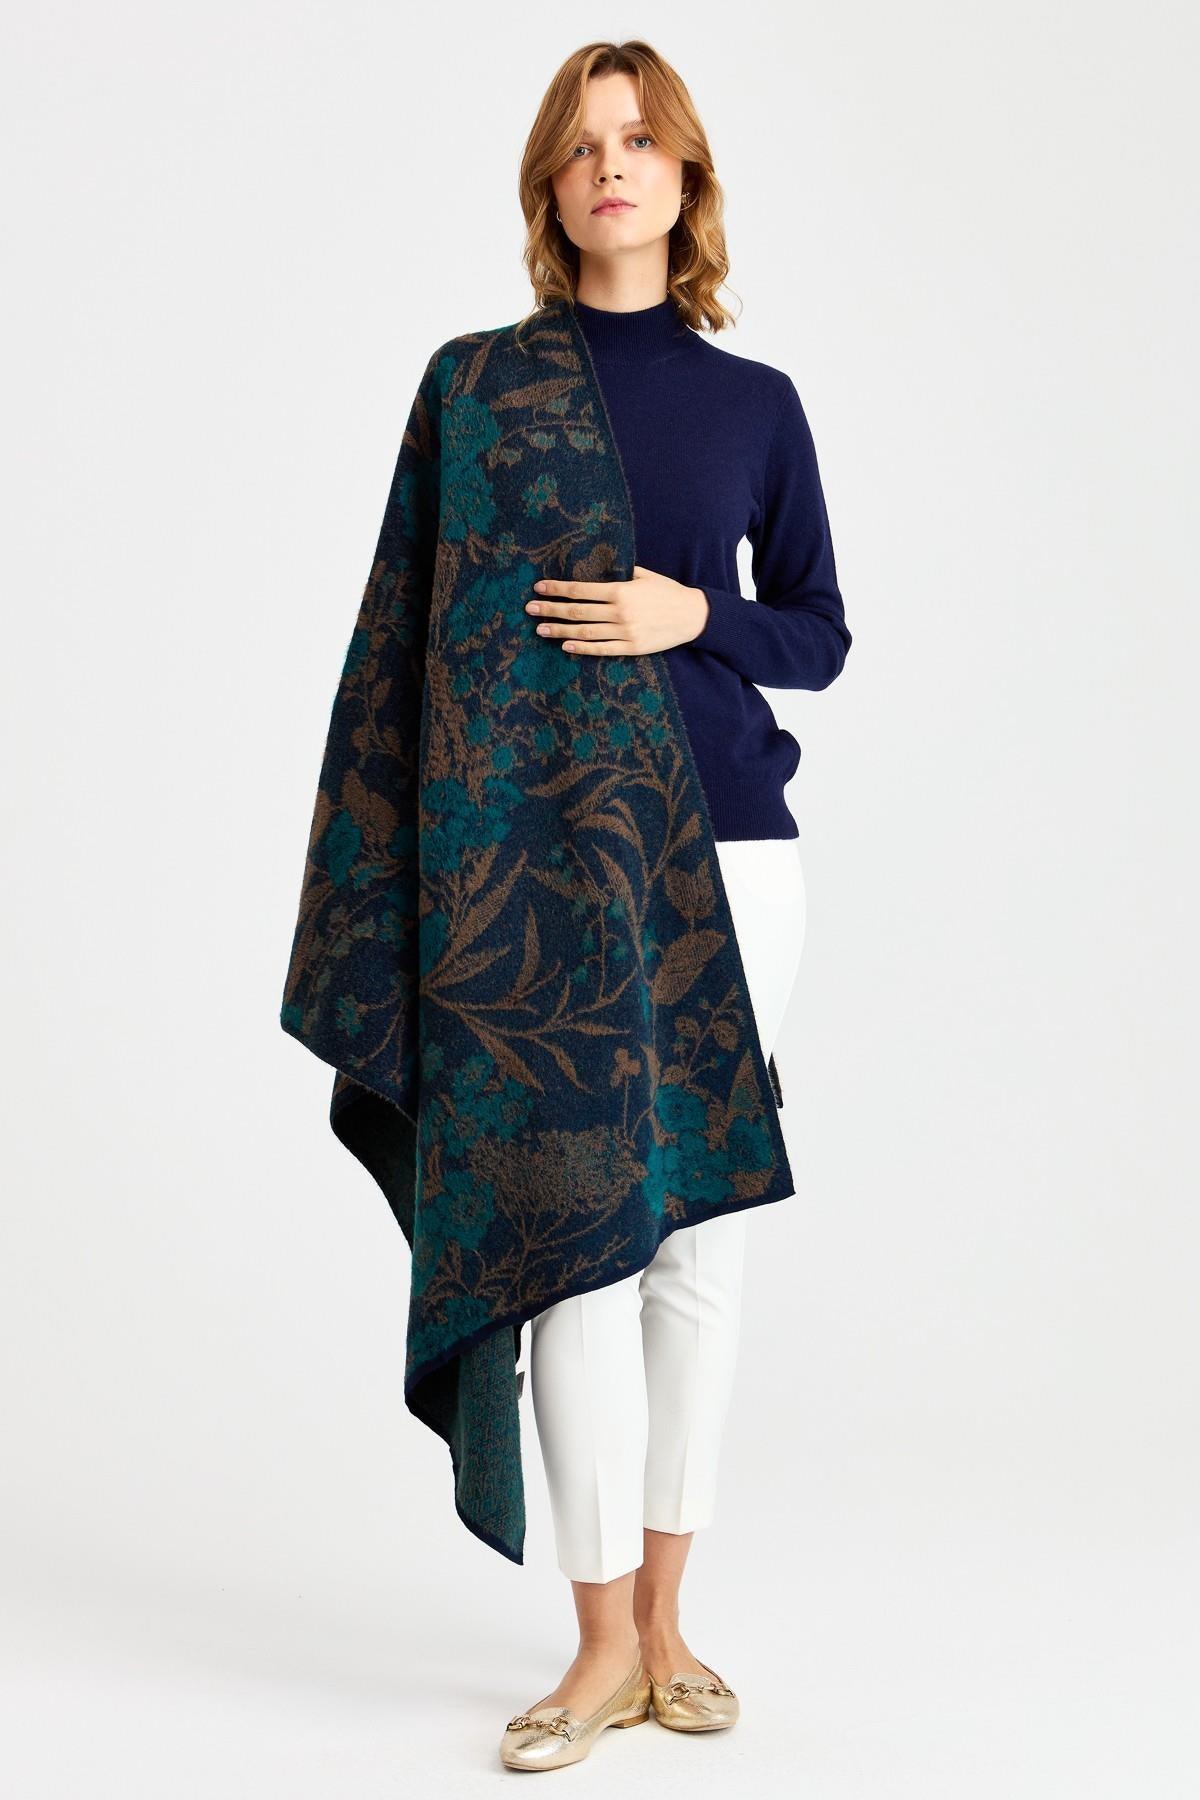 Desen Sarmaşık Desenli Yün Büyük Kadın Şal - Eser Giyim